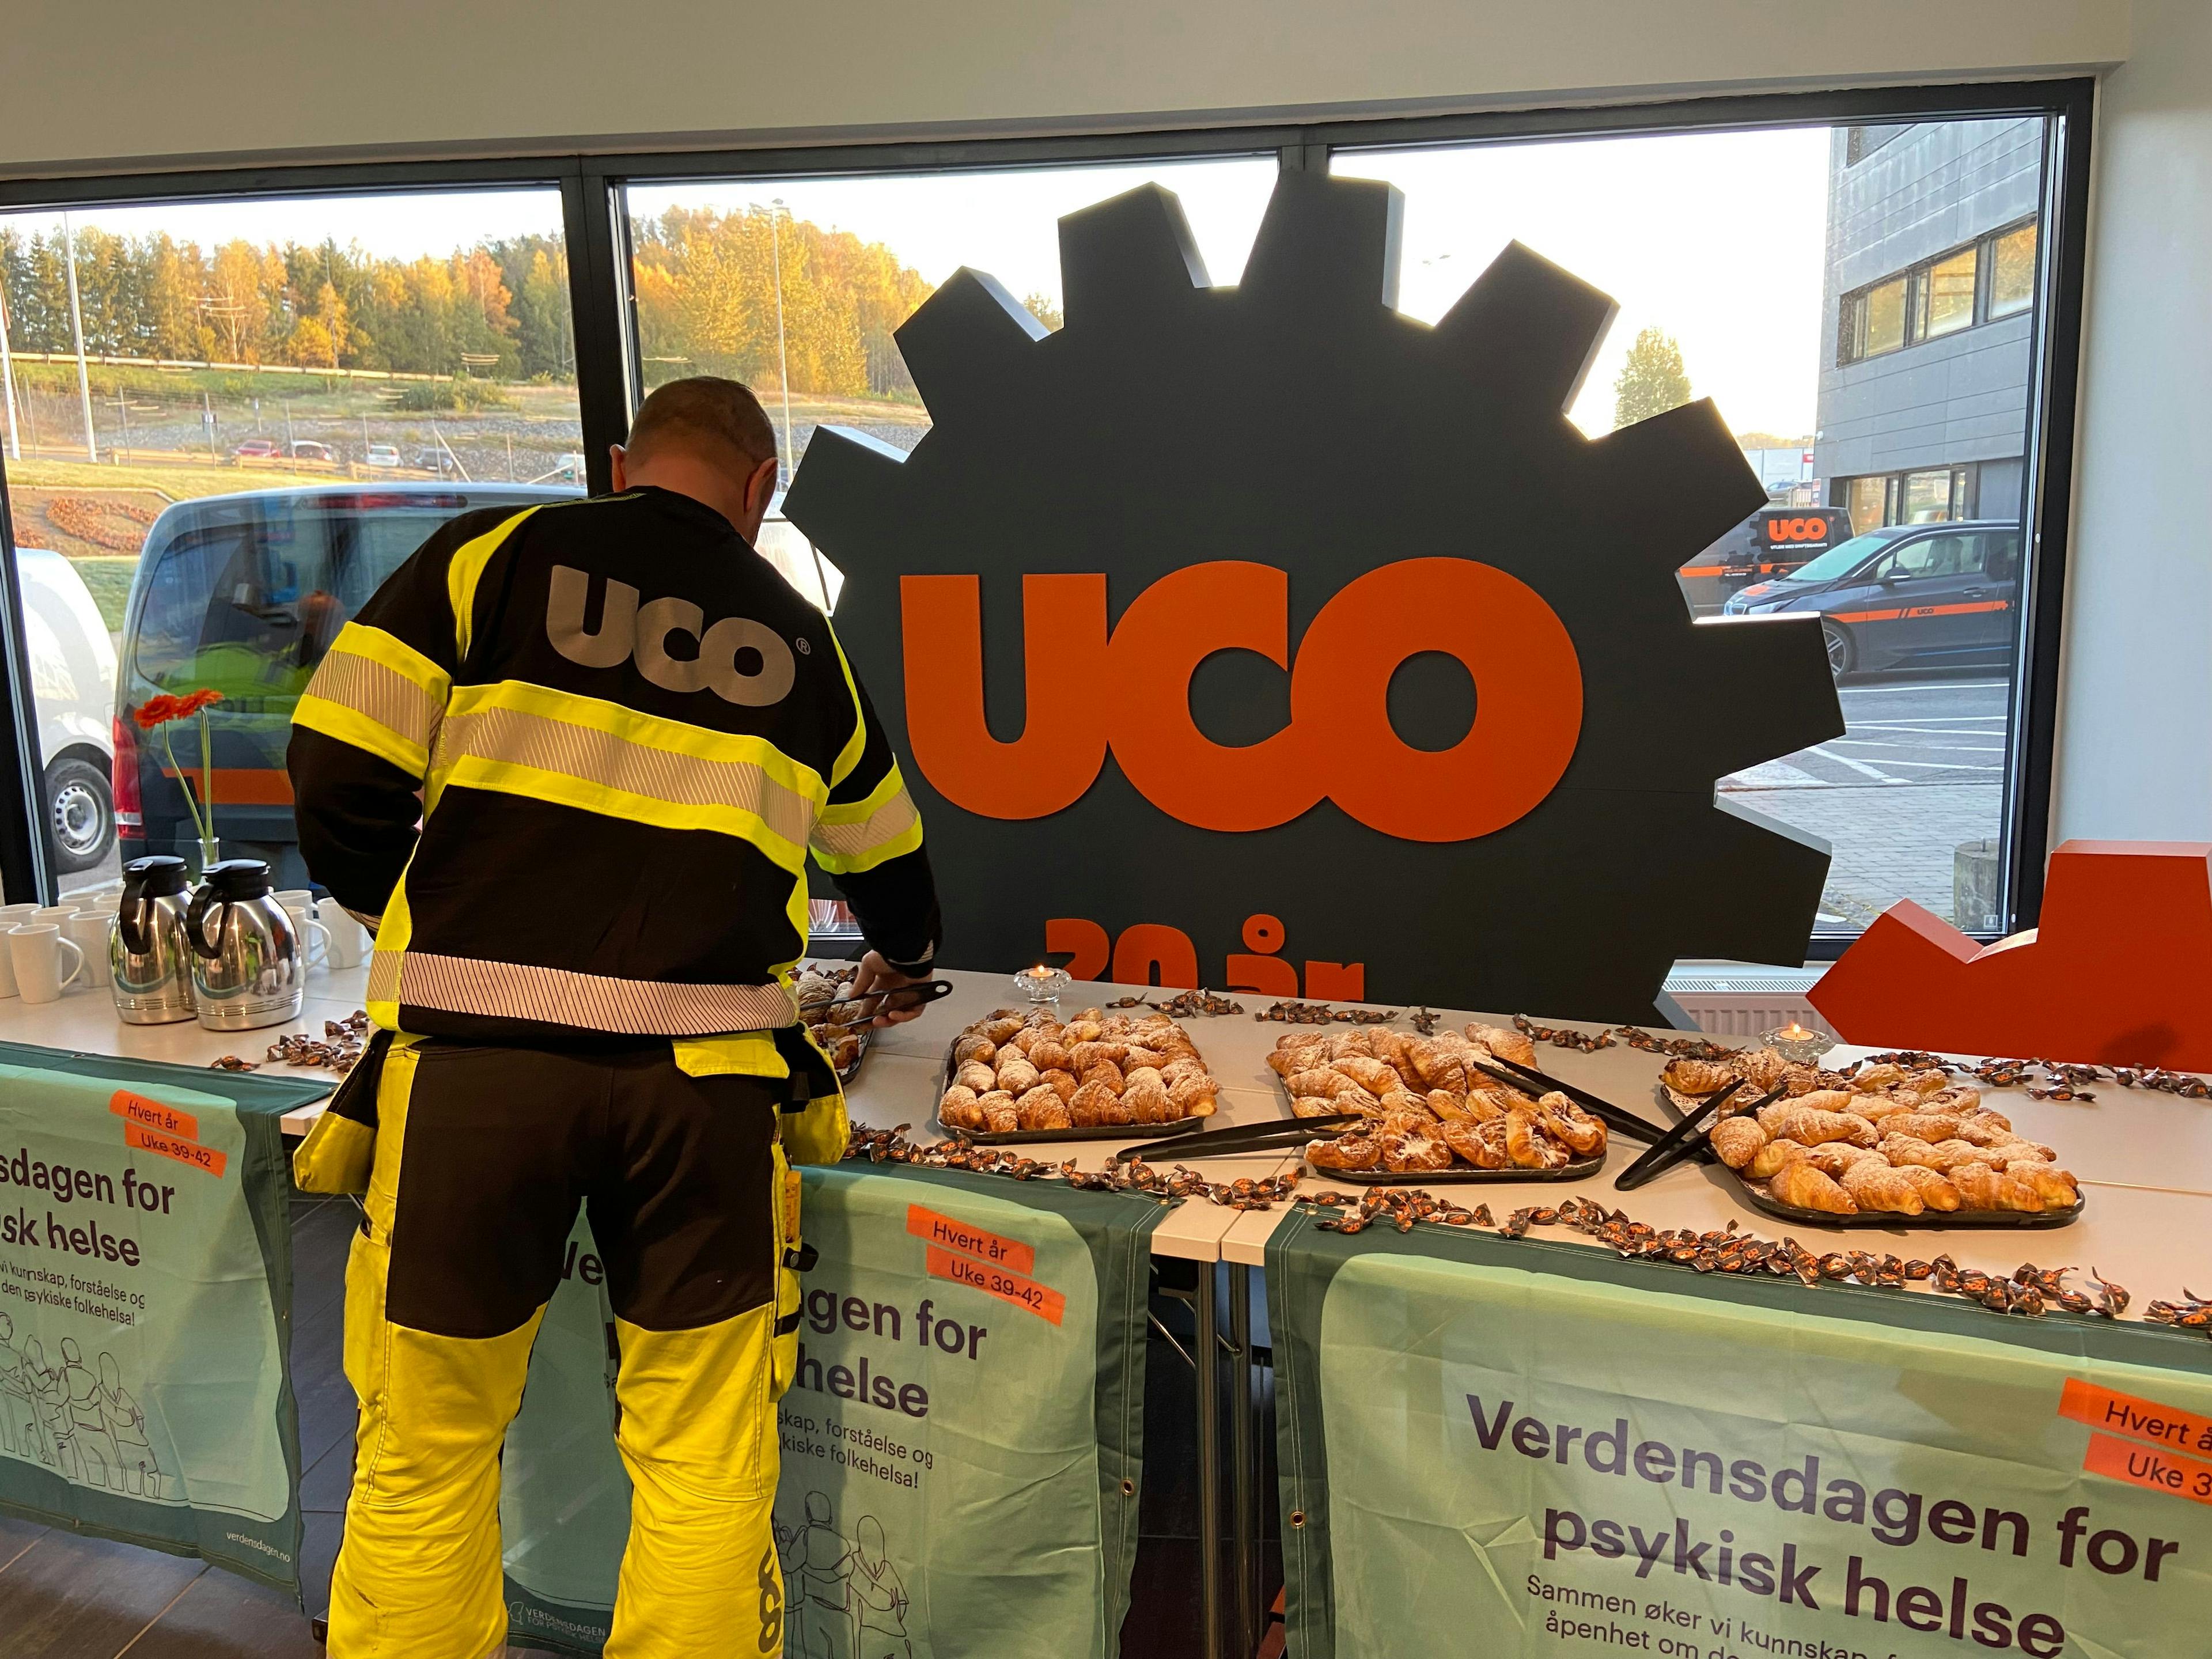 En mann i uniform med firmanavnet "UCO" printet på ryggen, står foran et bord og forsyner seg med bakst. Foran på bordene henger Verdensdagen for psykisk helse-bannere, og bak bordet står en stor plansje med nok en UCO-logo på.